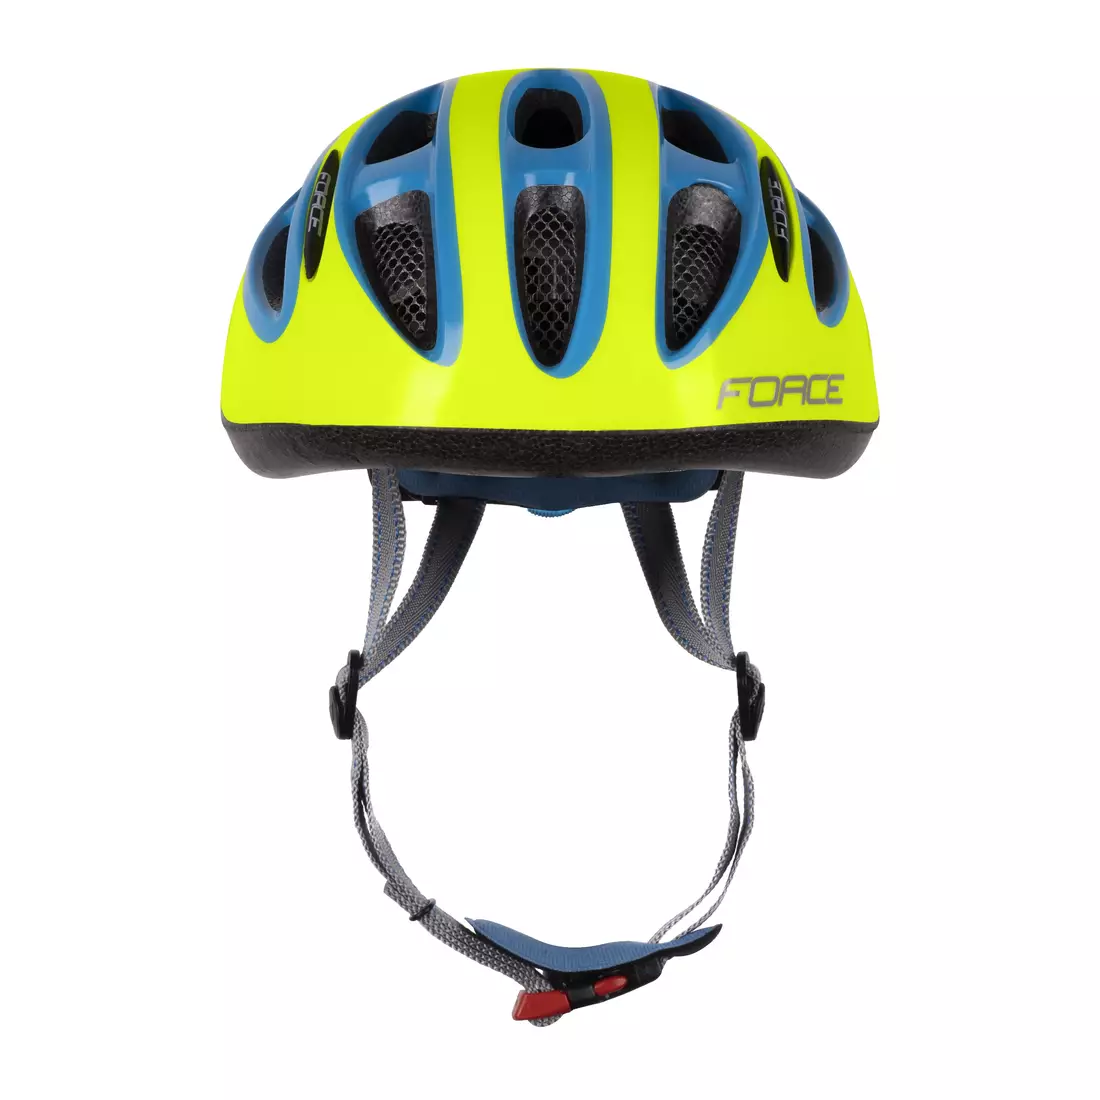 FORCE Children's bicycle helmet LARK, fluo-blue, 902221